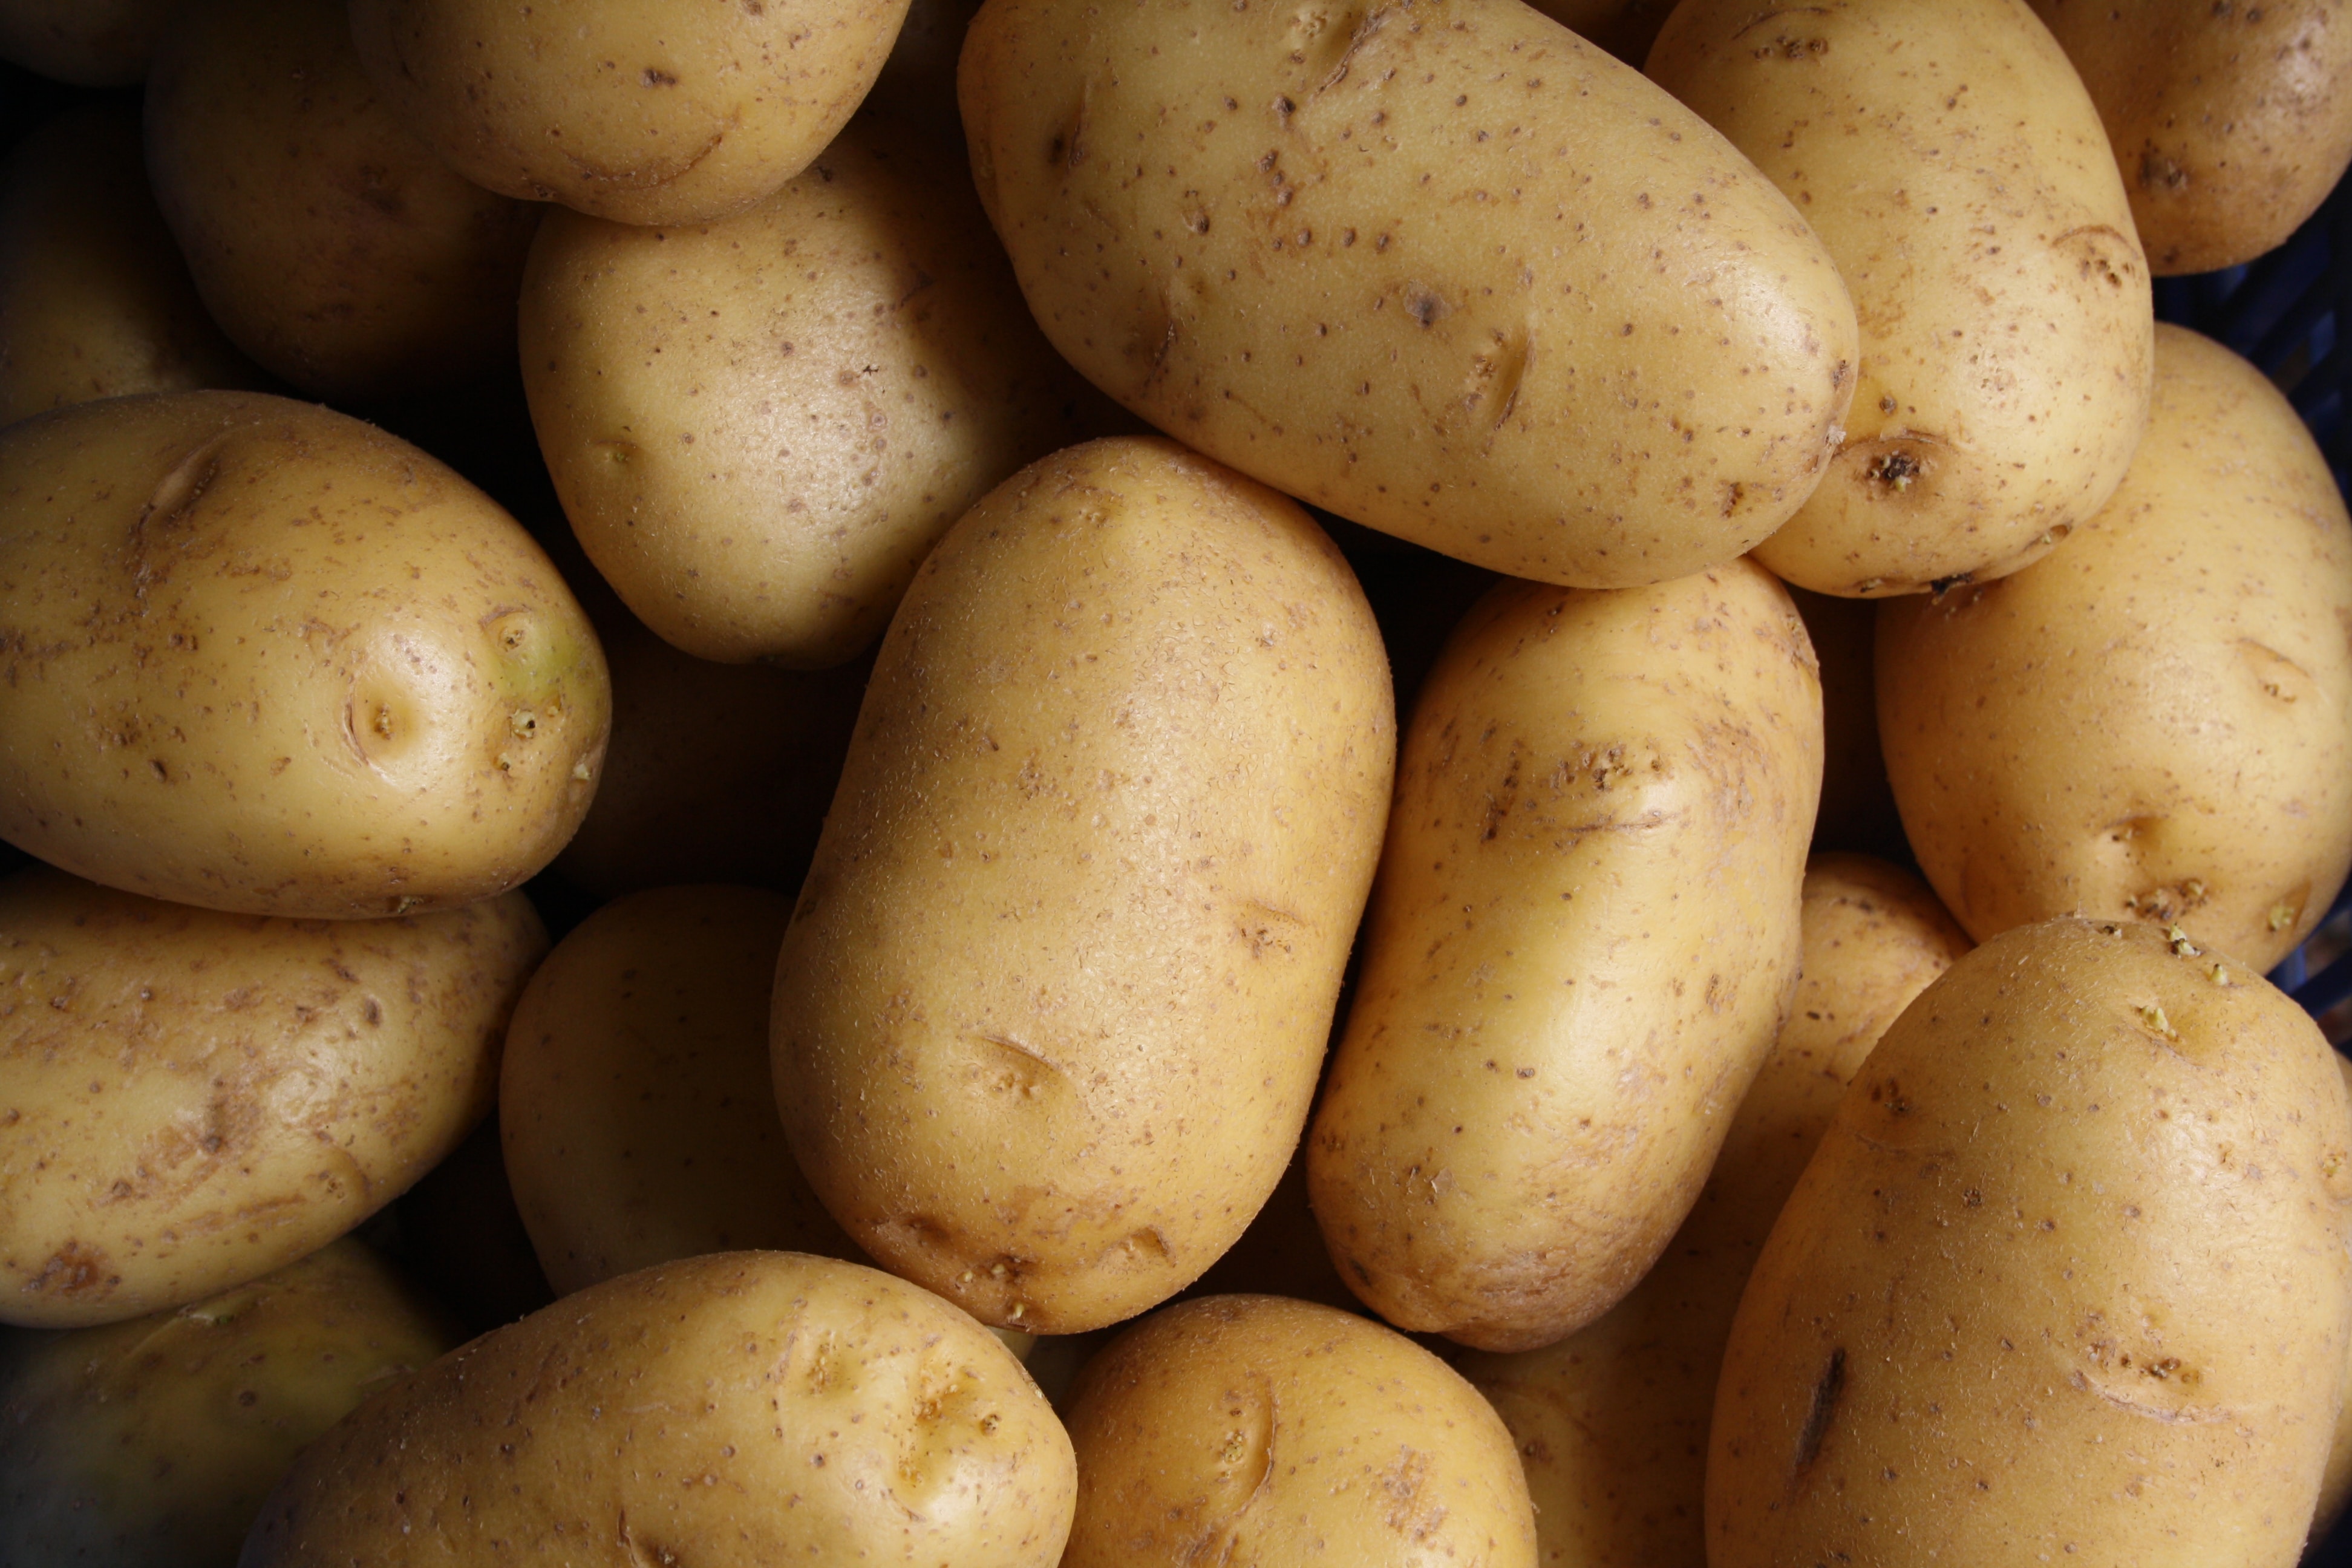 Potato prices going down